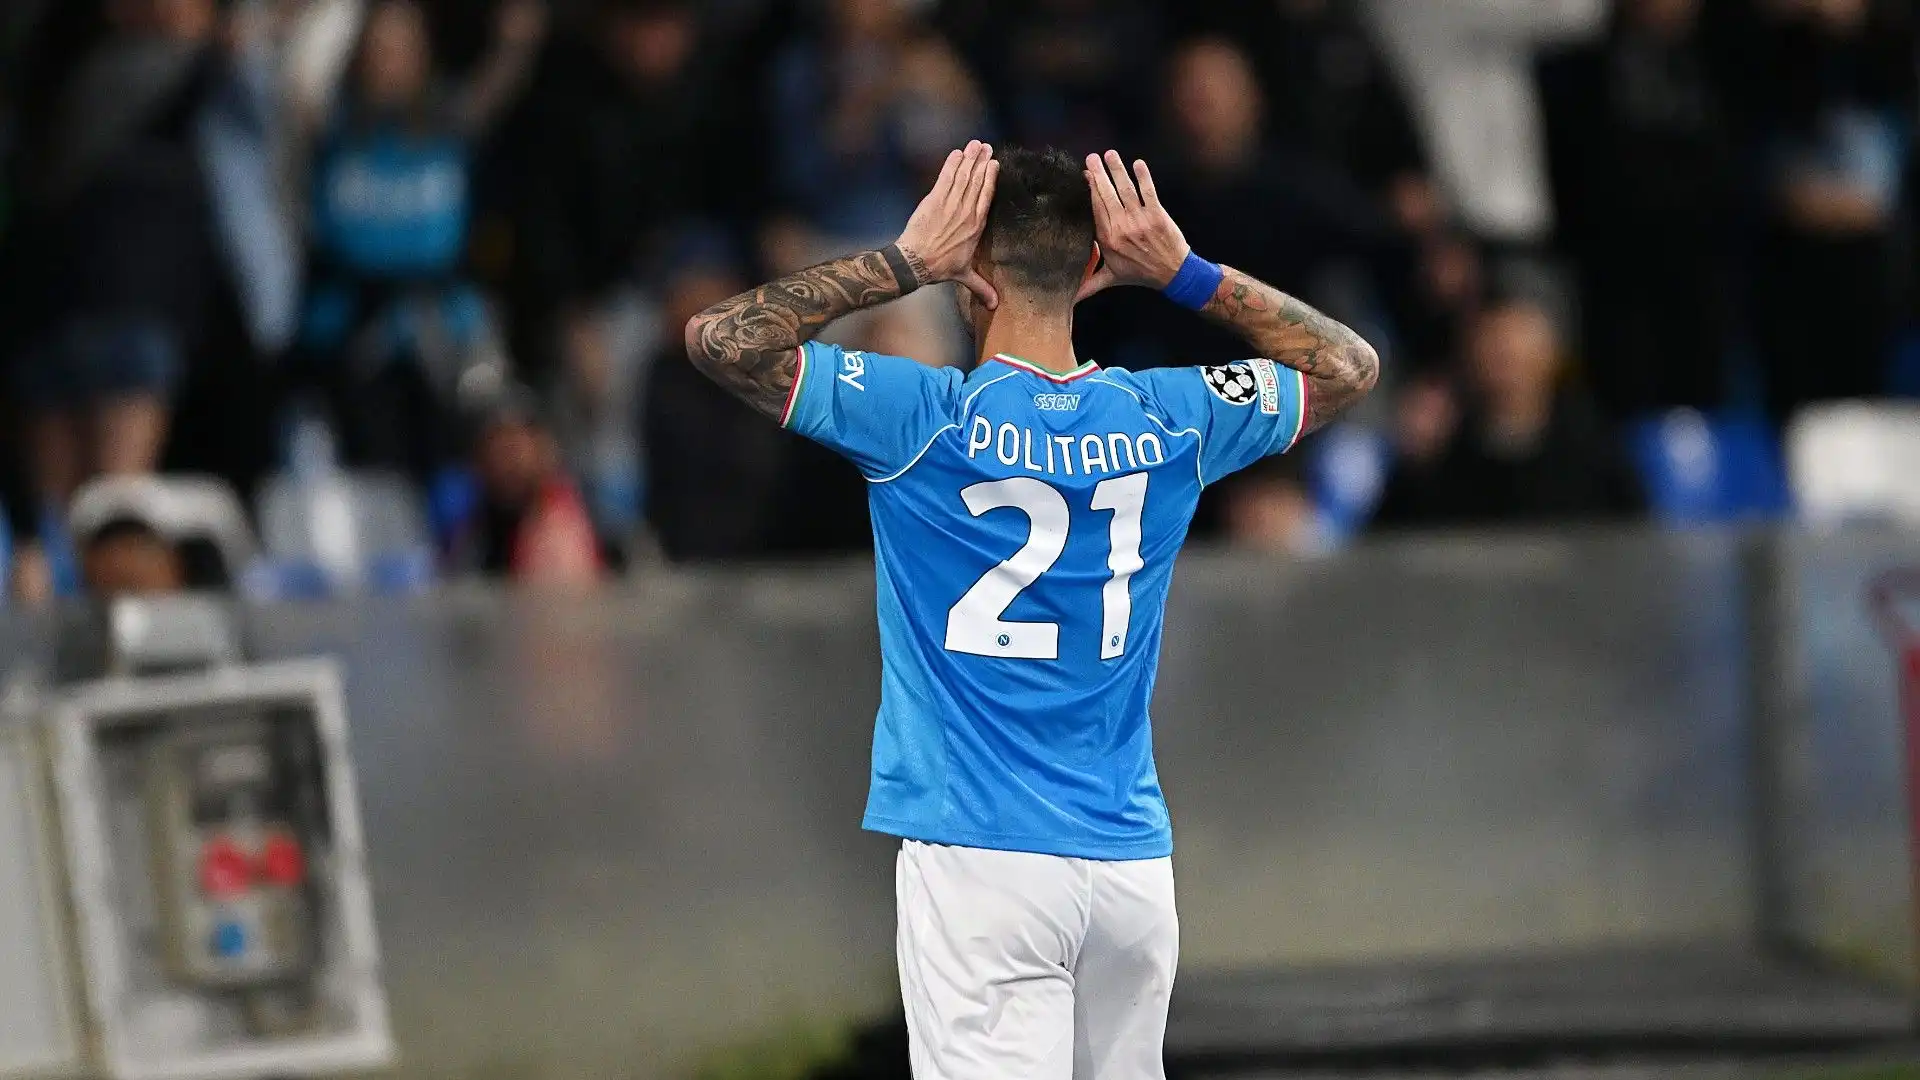 Matteo Politano gioca nel Napoli dal 2020 ed è stato pagato circa 22 milioni di euro